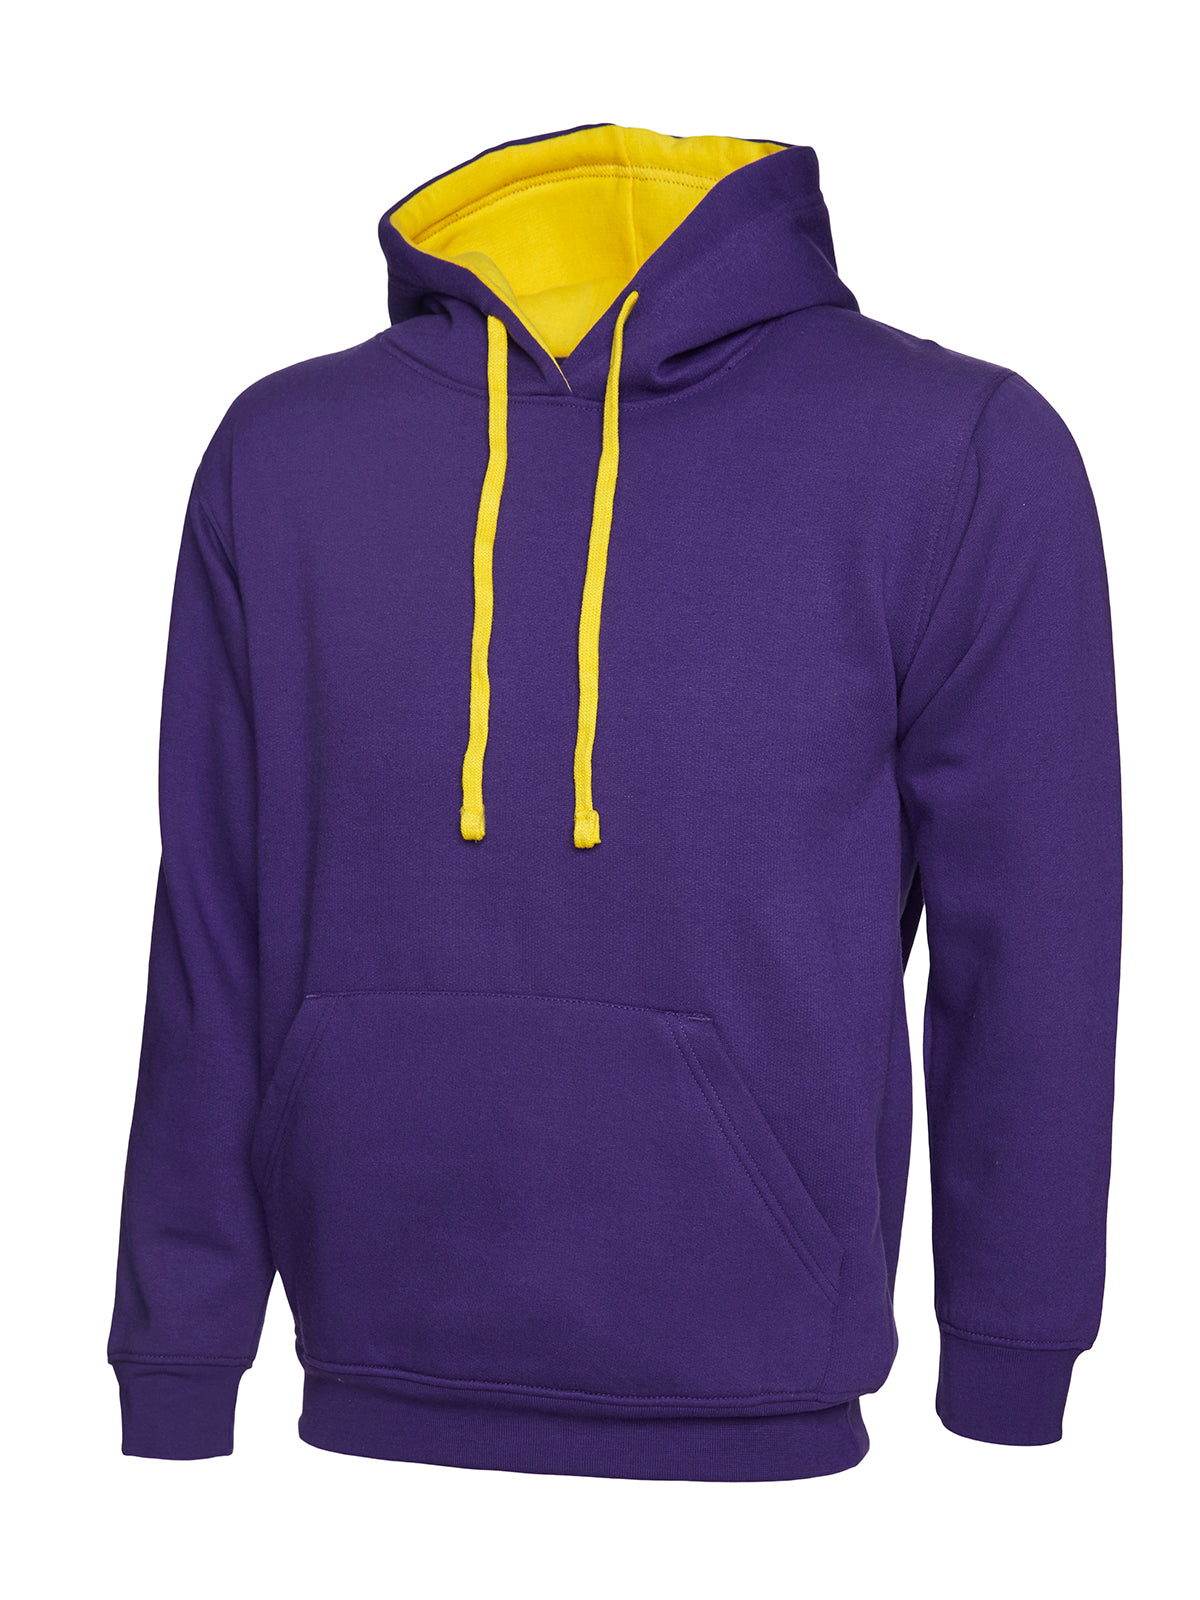 Uneek Contrast Hooded Sweatshirt UC507 - Purple/Yellow